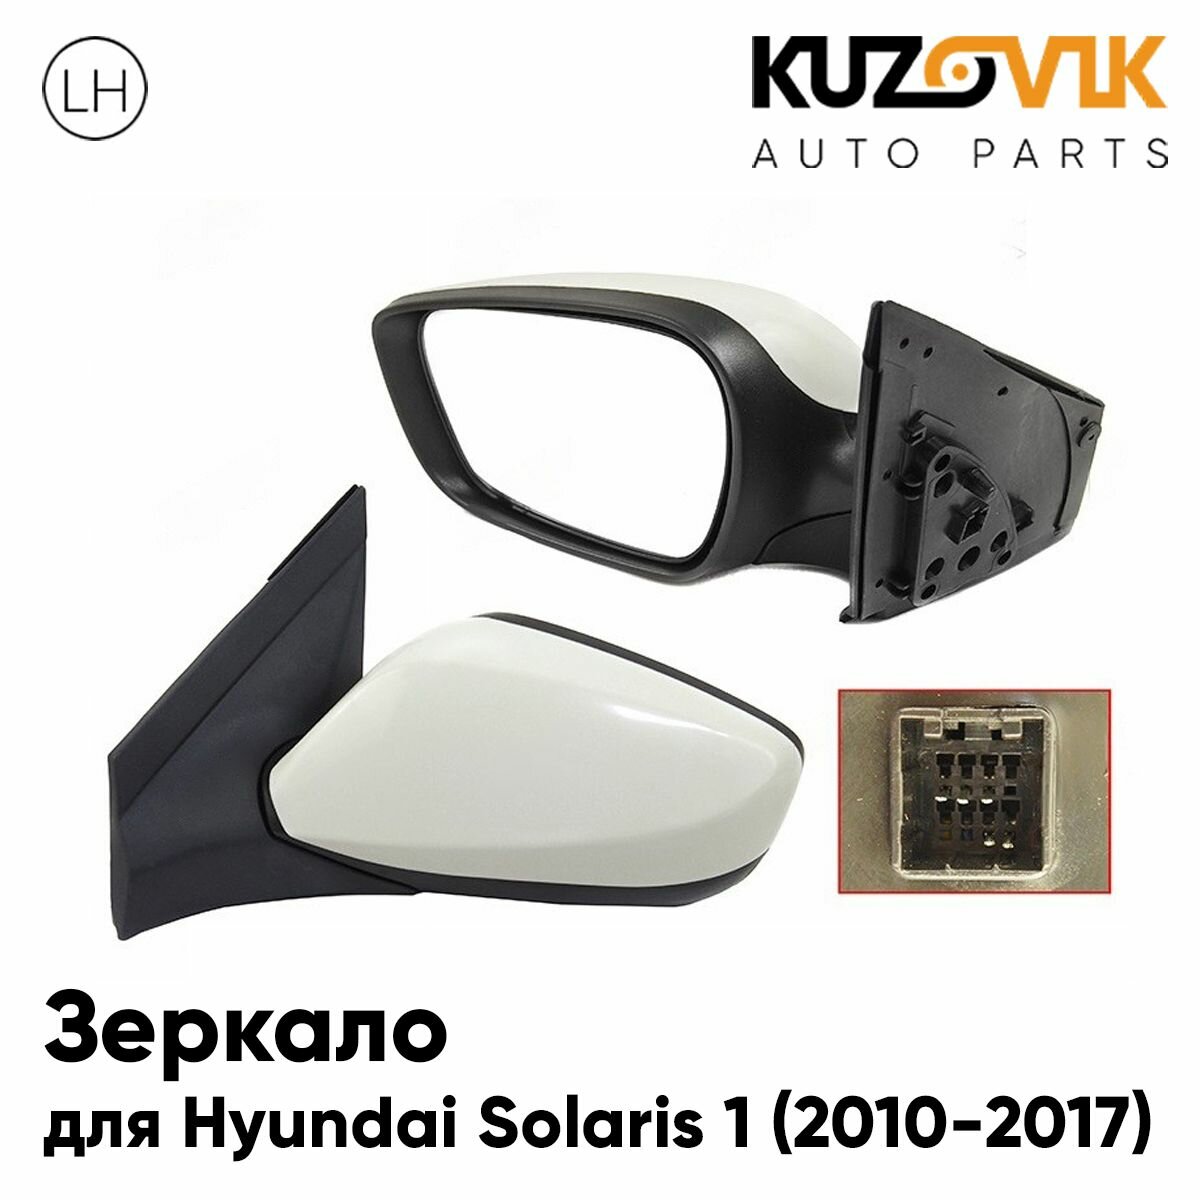 Зеркало правое Hyundai Solaris 1 (2010-2017) с обогревом эл. регулировка 5 конт.